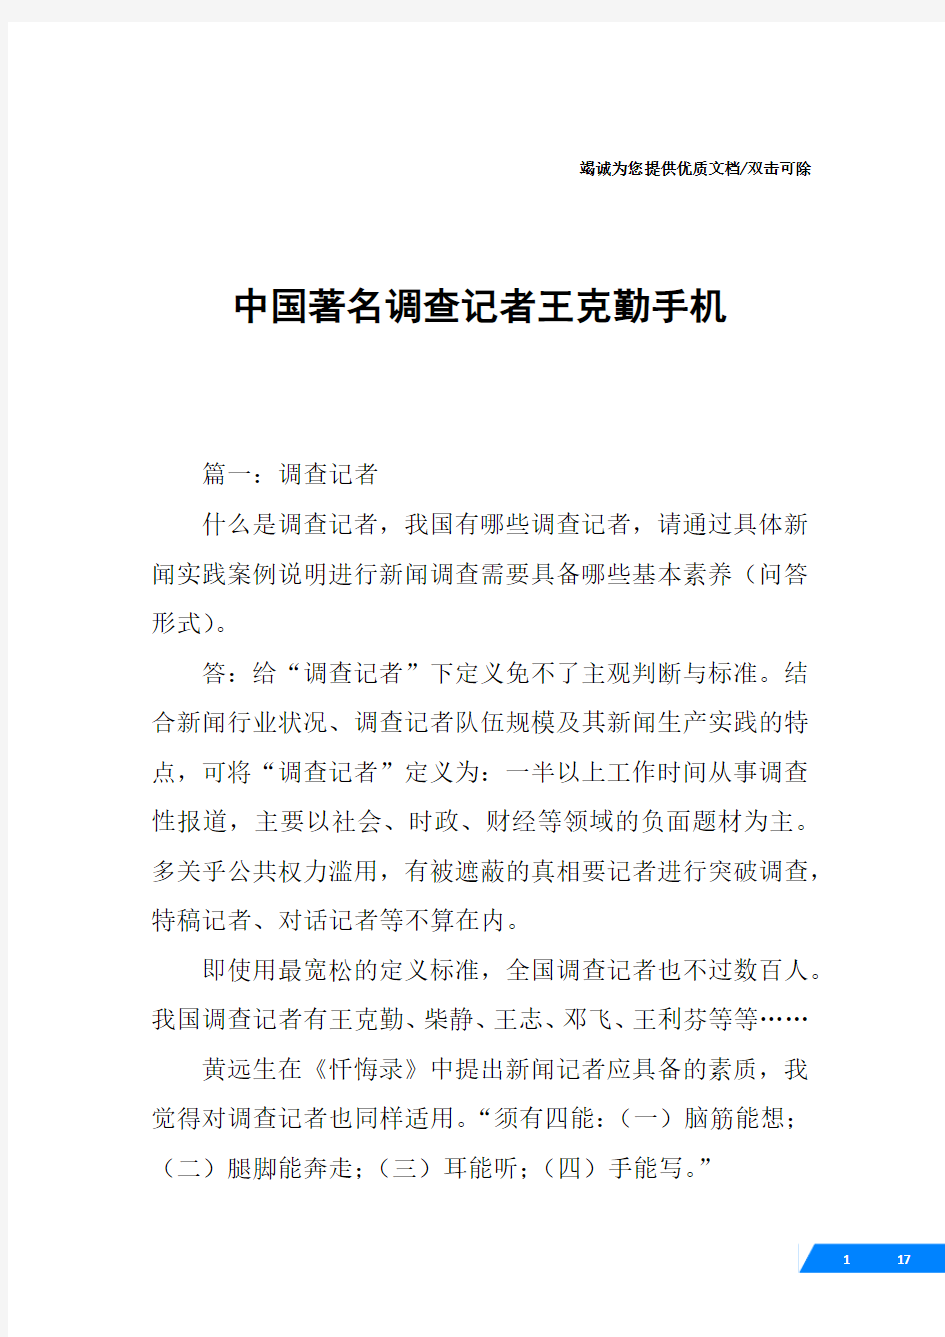 中国著名调查记者王克勤手机